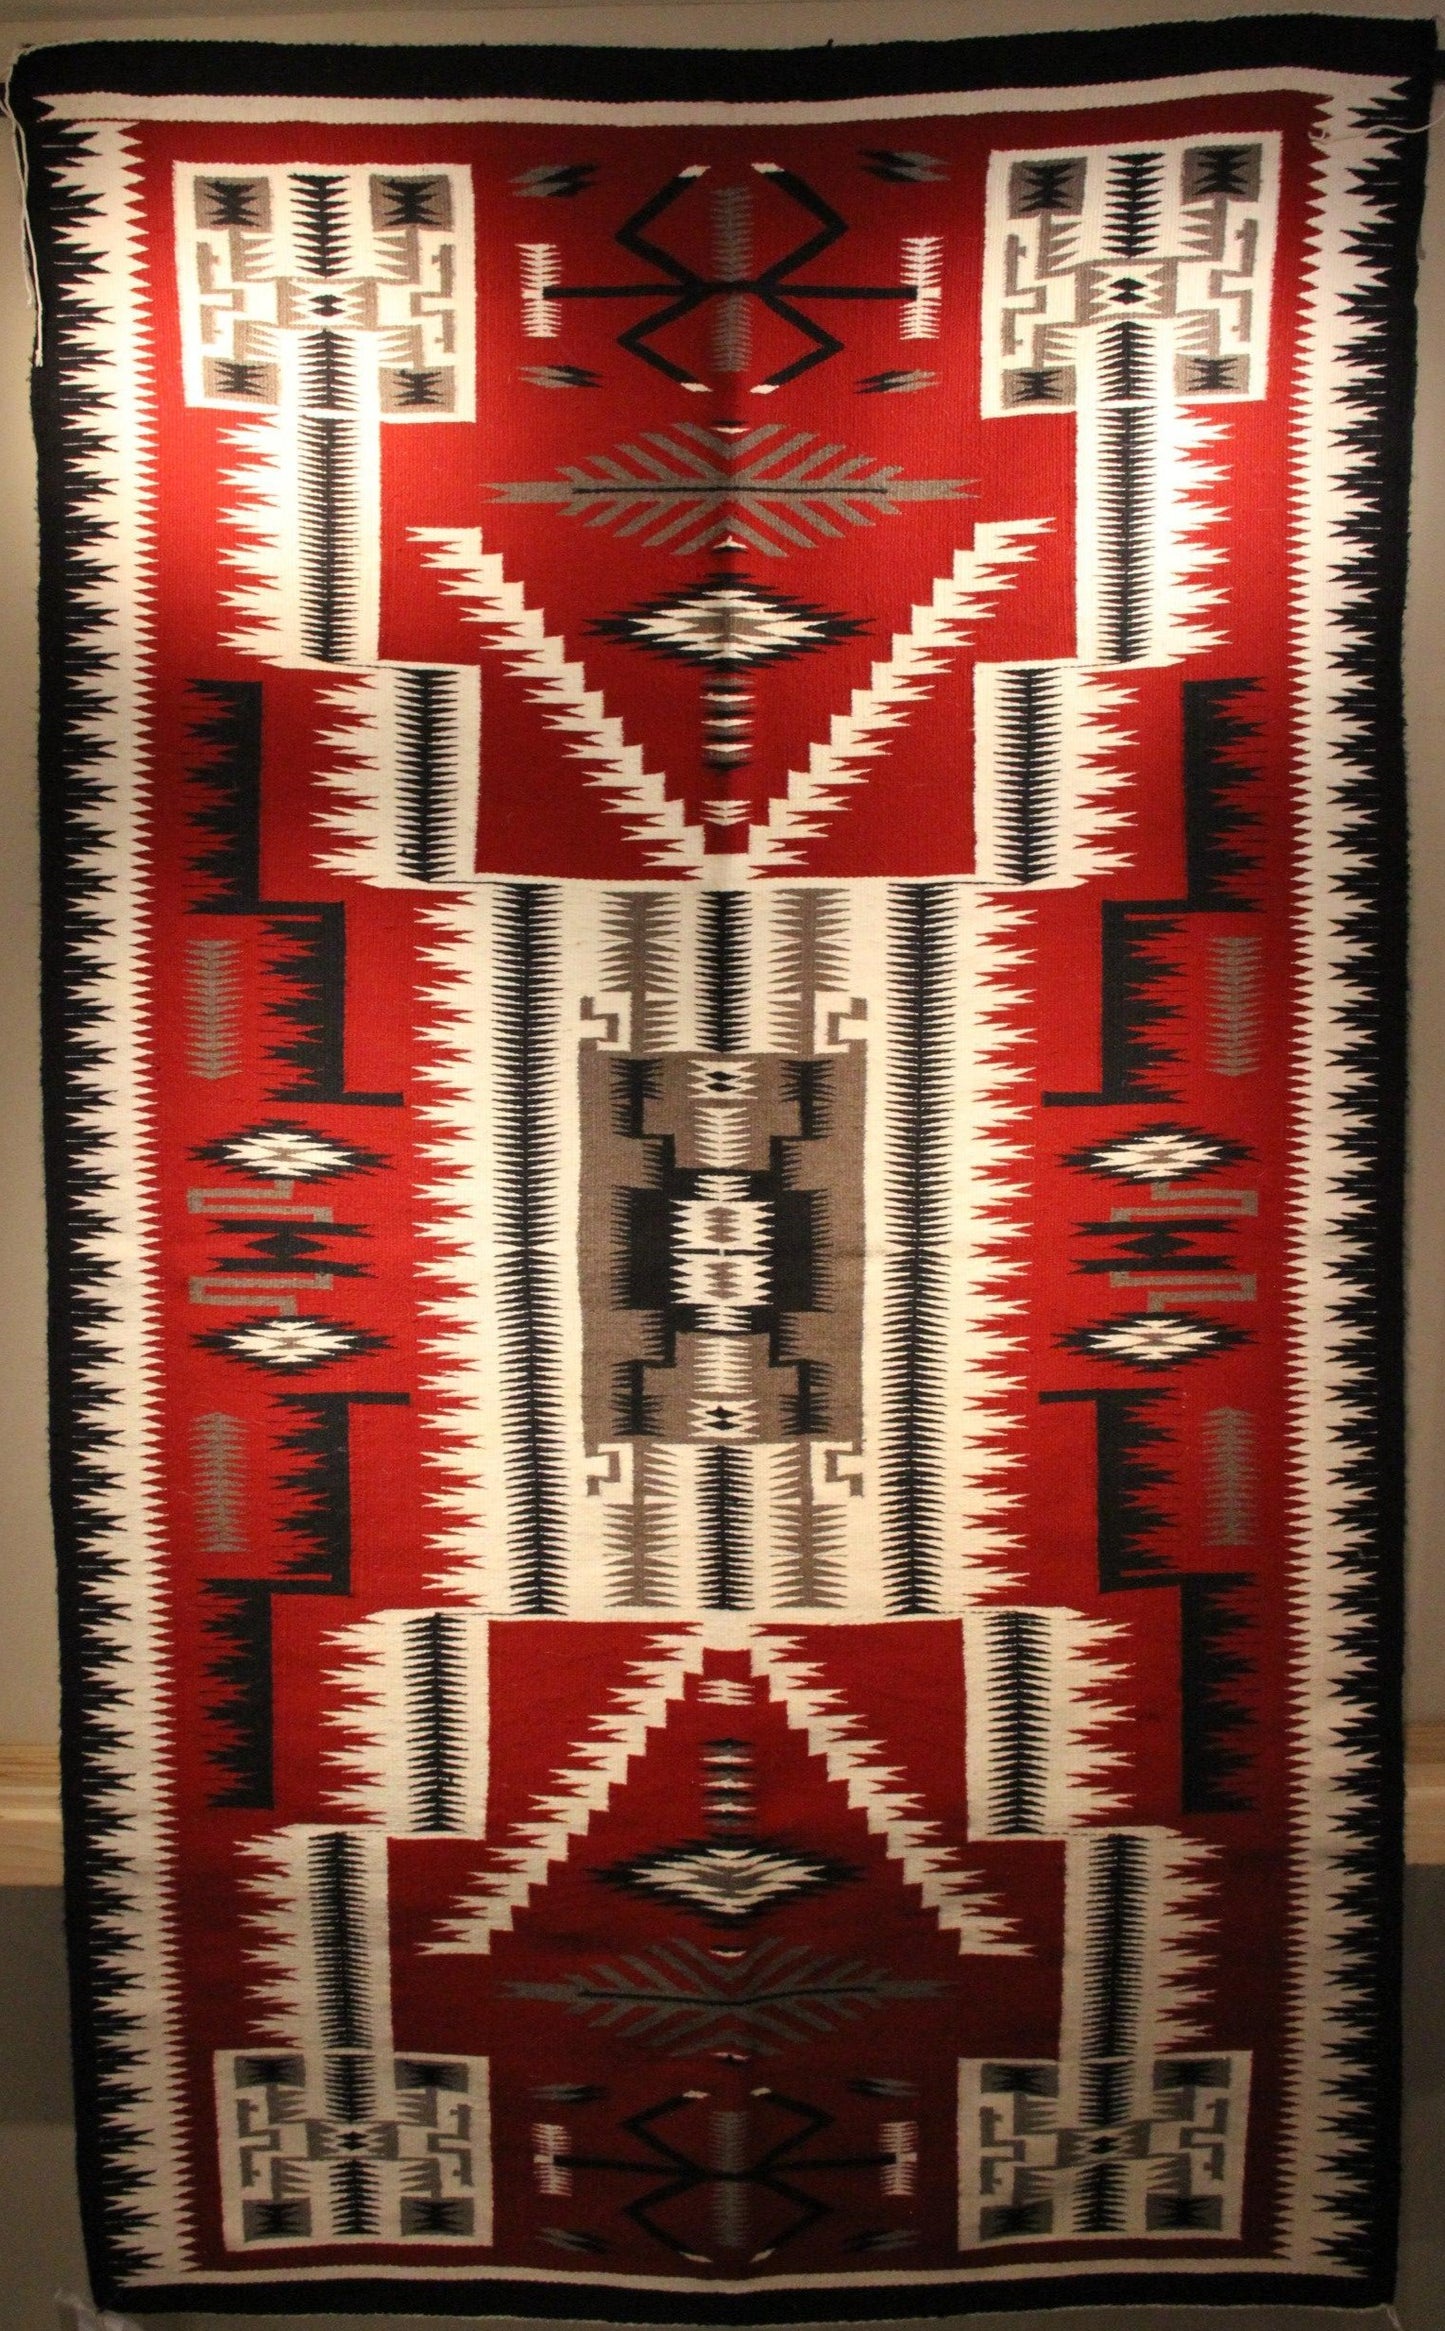 Storm Pattern by Minnie Sam-Weaving-Navajo Weaving-Sorrel Sky Gallery